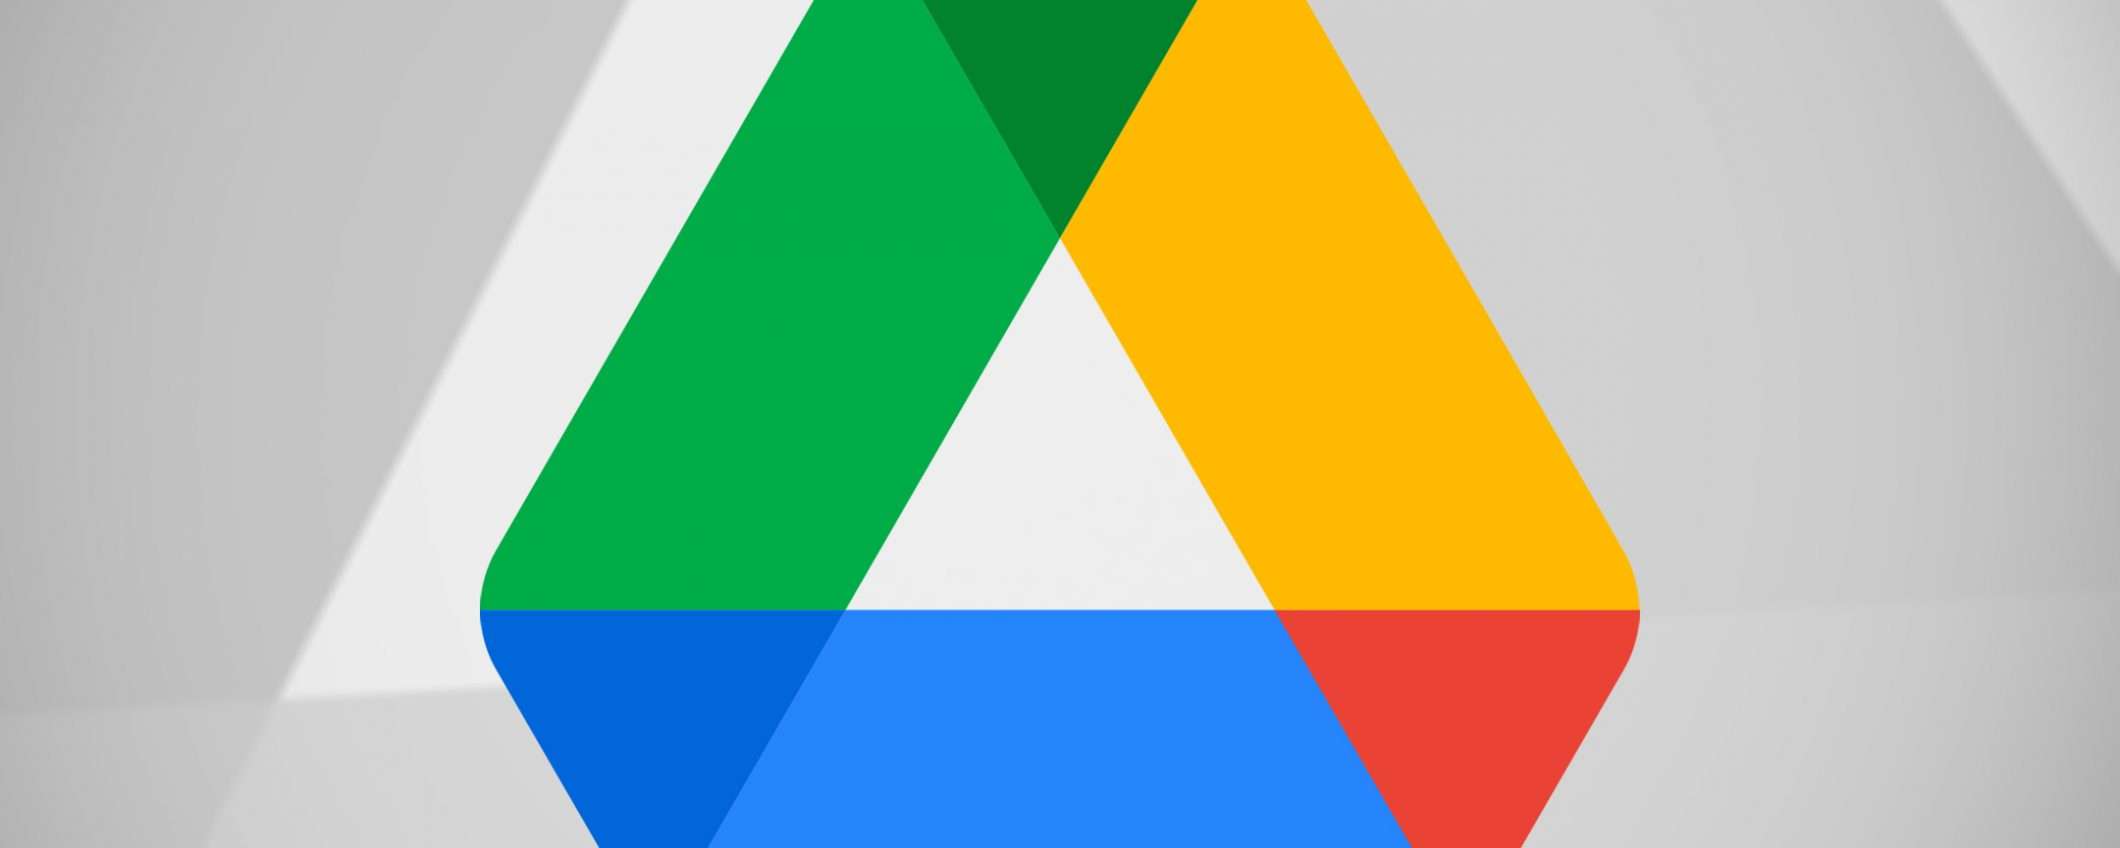 Google Drive: un bug causa problemi di copyright